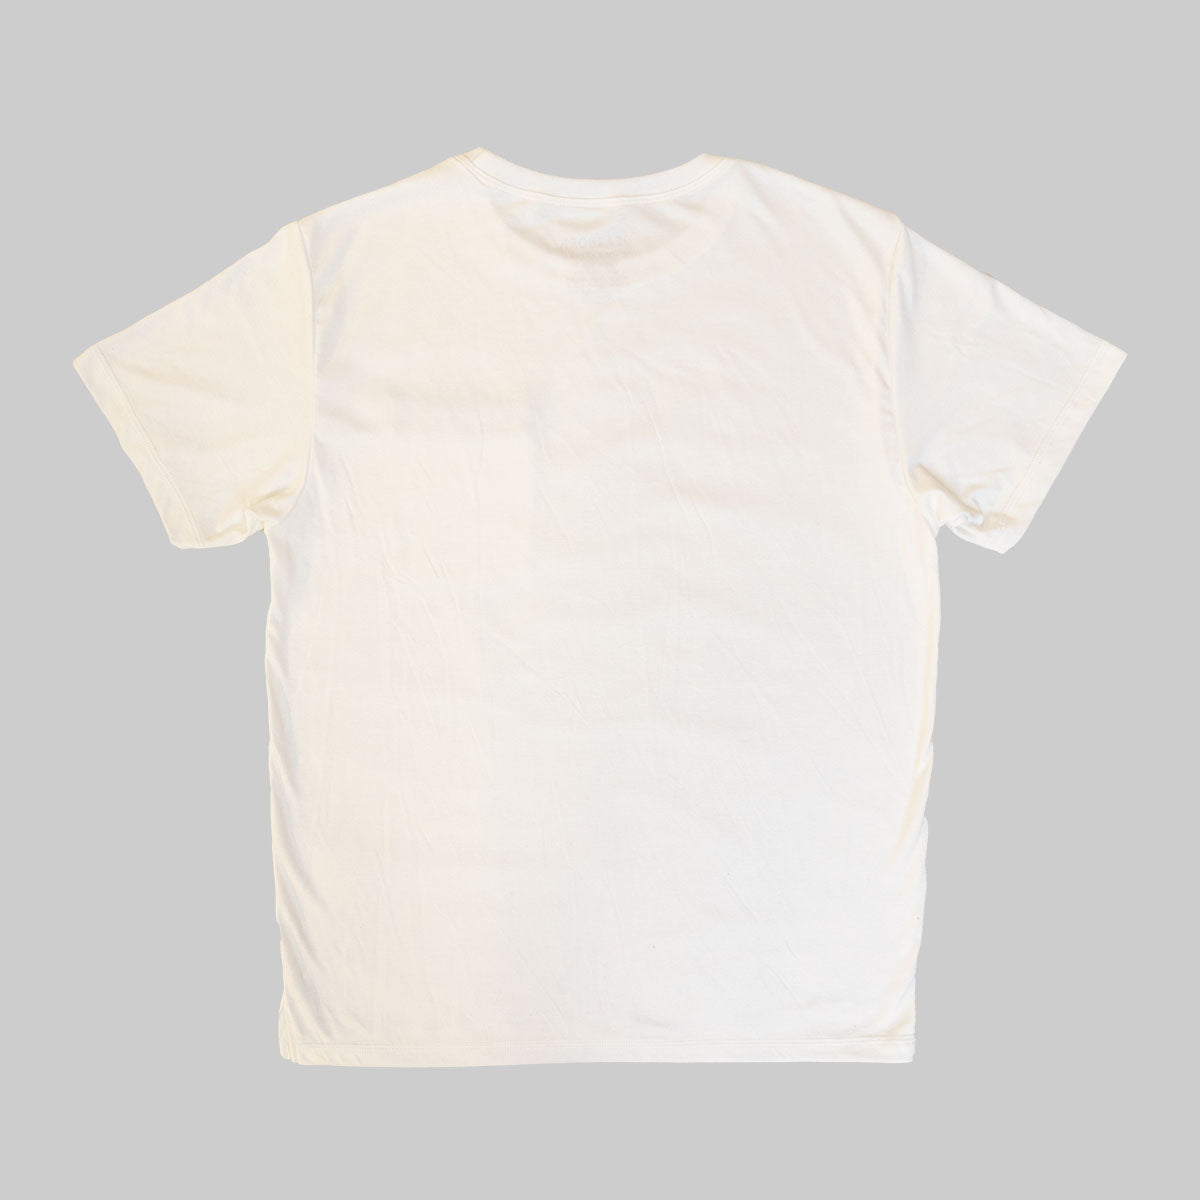 Bar Shirt - White